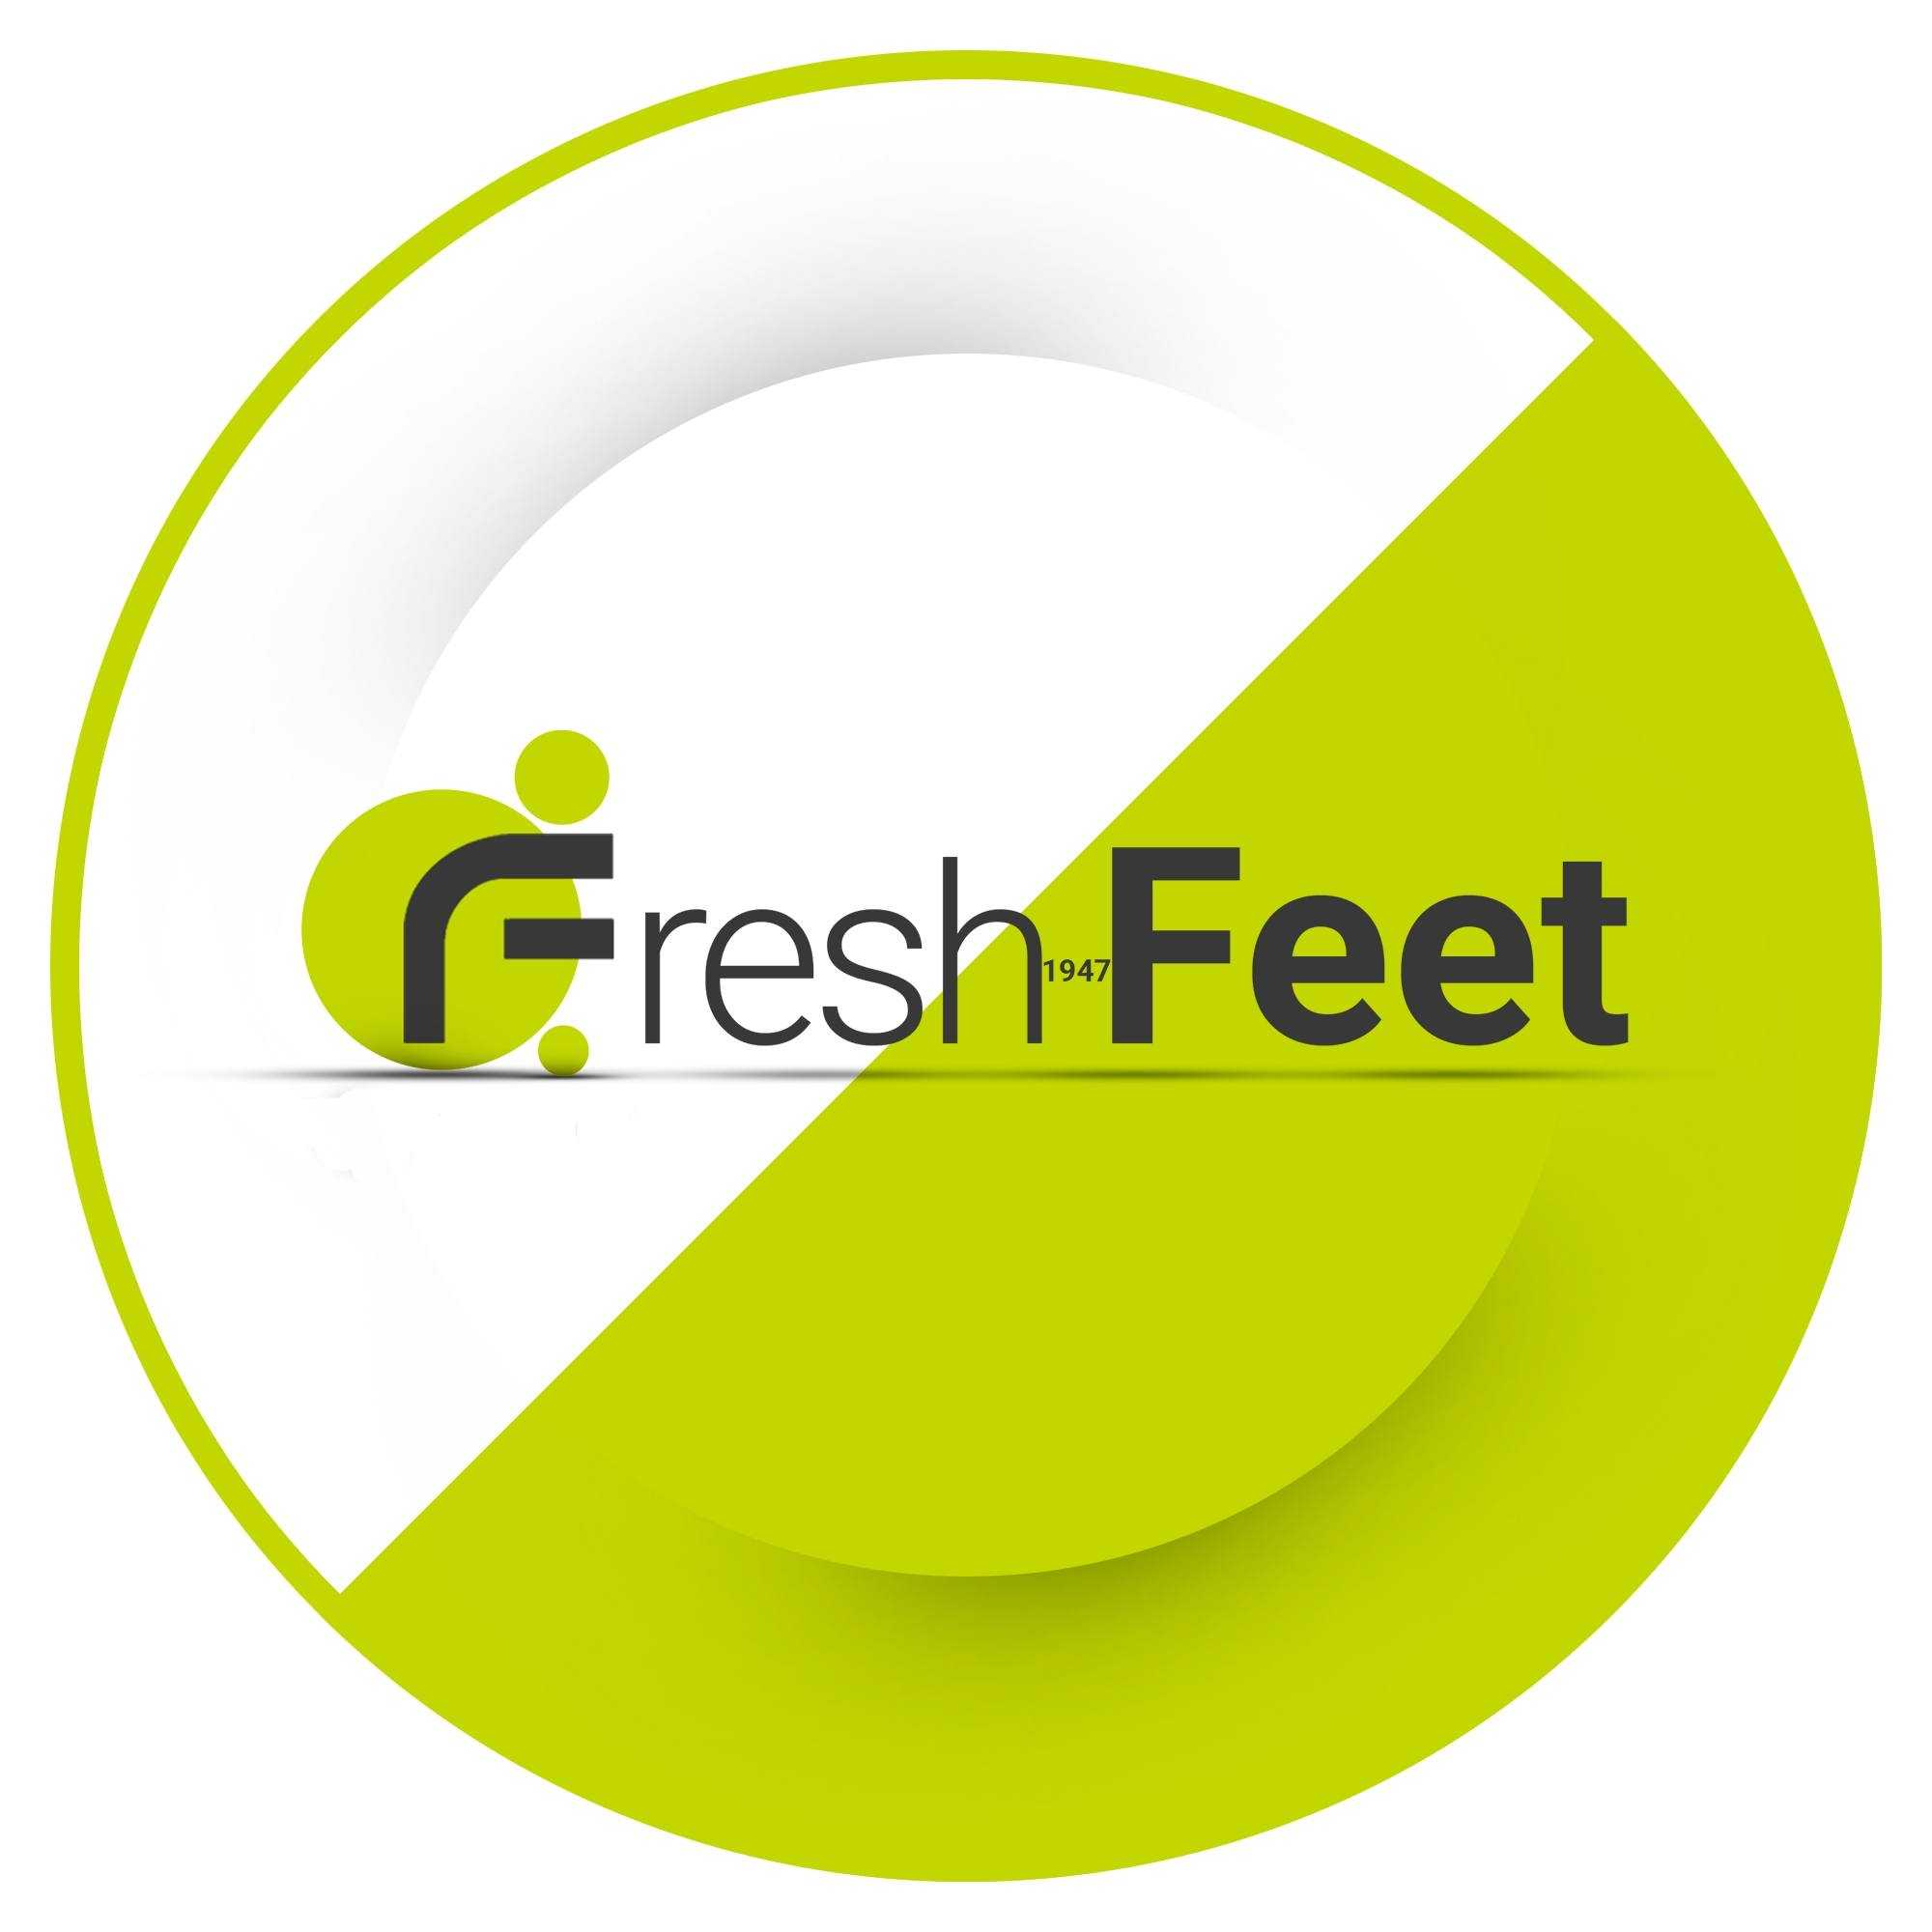 Fresh Feet